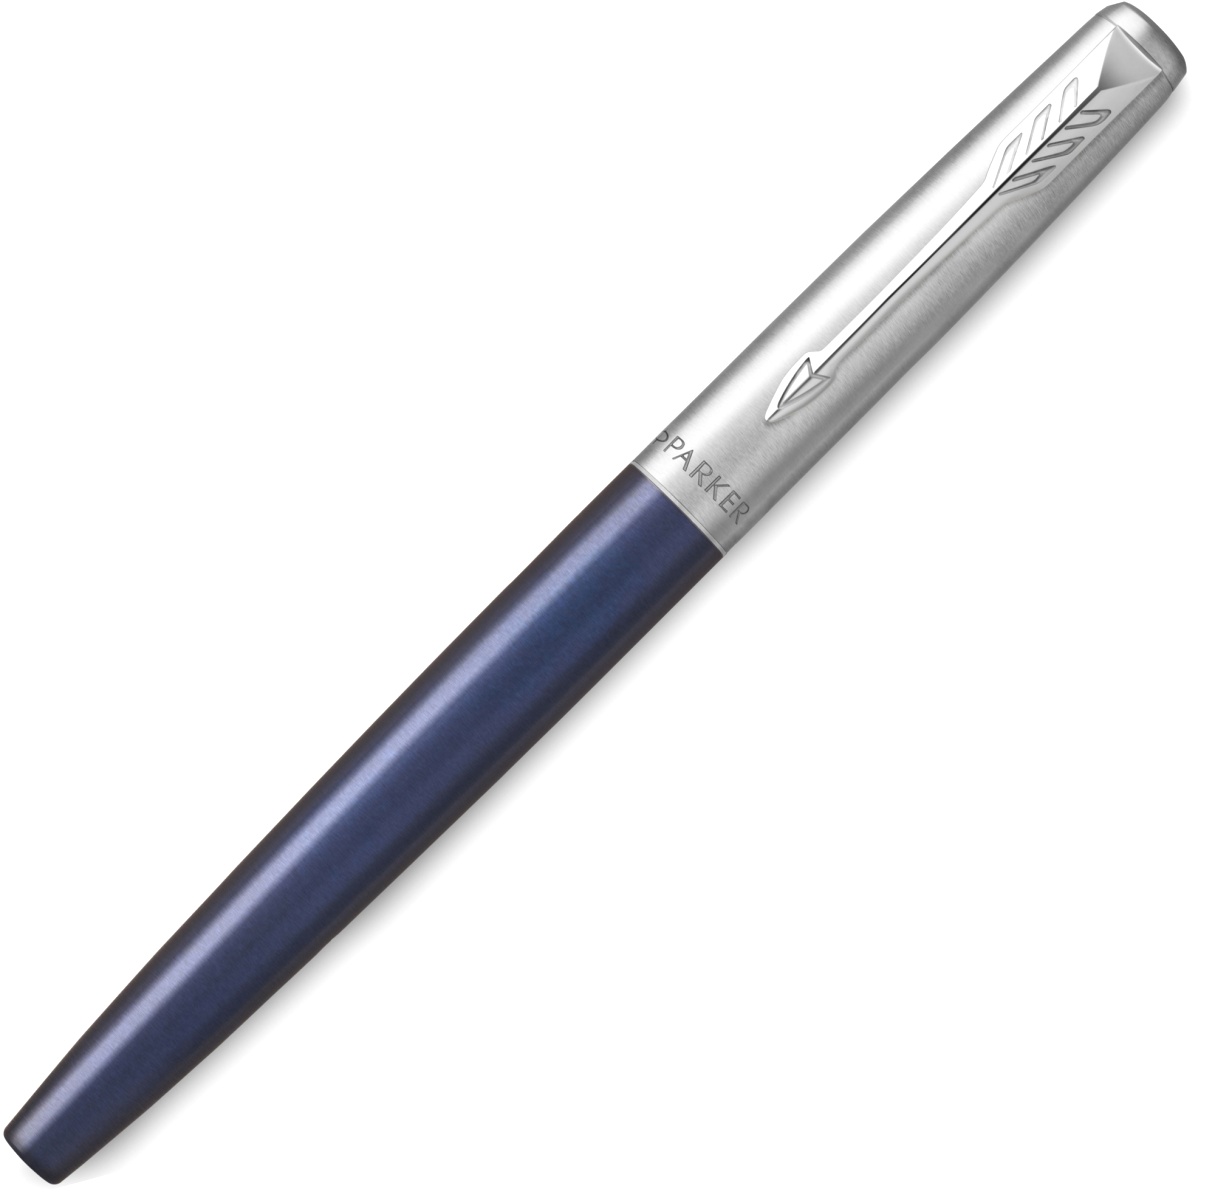  Ручка-роллер Parker Jotter Core T63, Royal Blue CT, фото 2